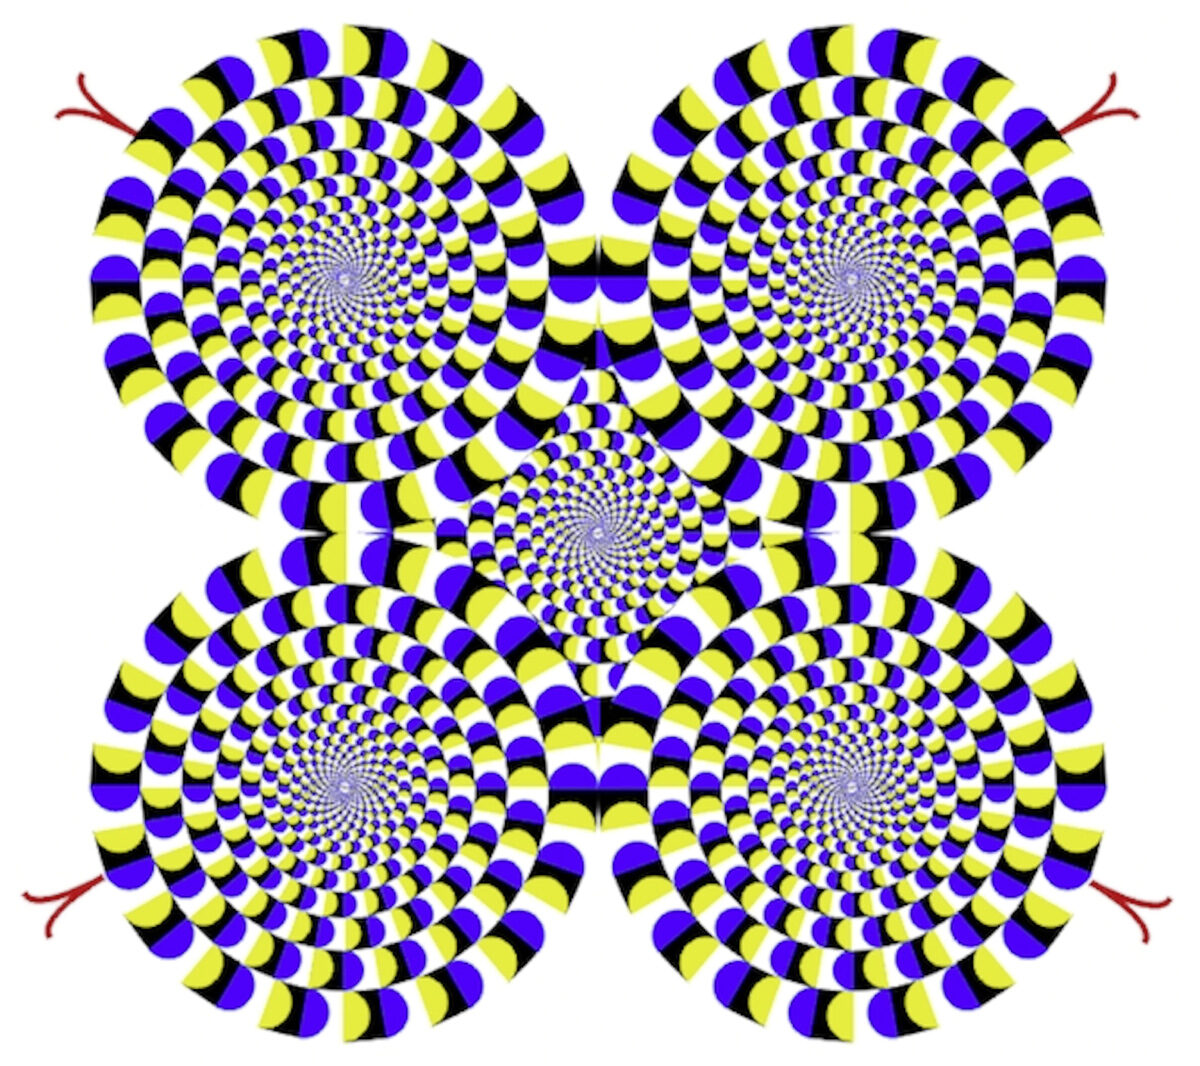 Вращение кругов на одной из иллюзий Китаоки происходит только в мозгу зрителя